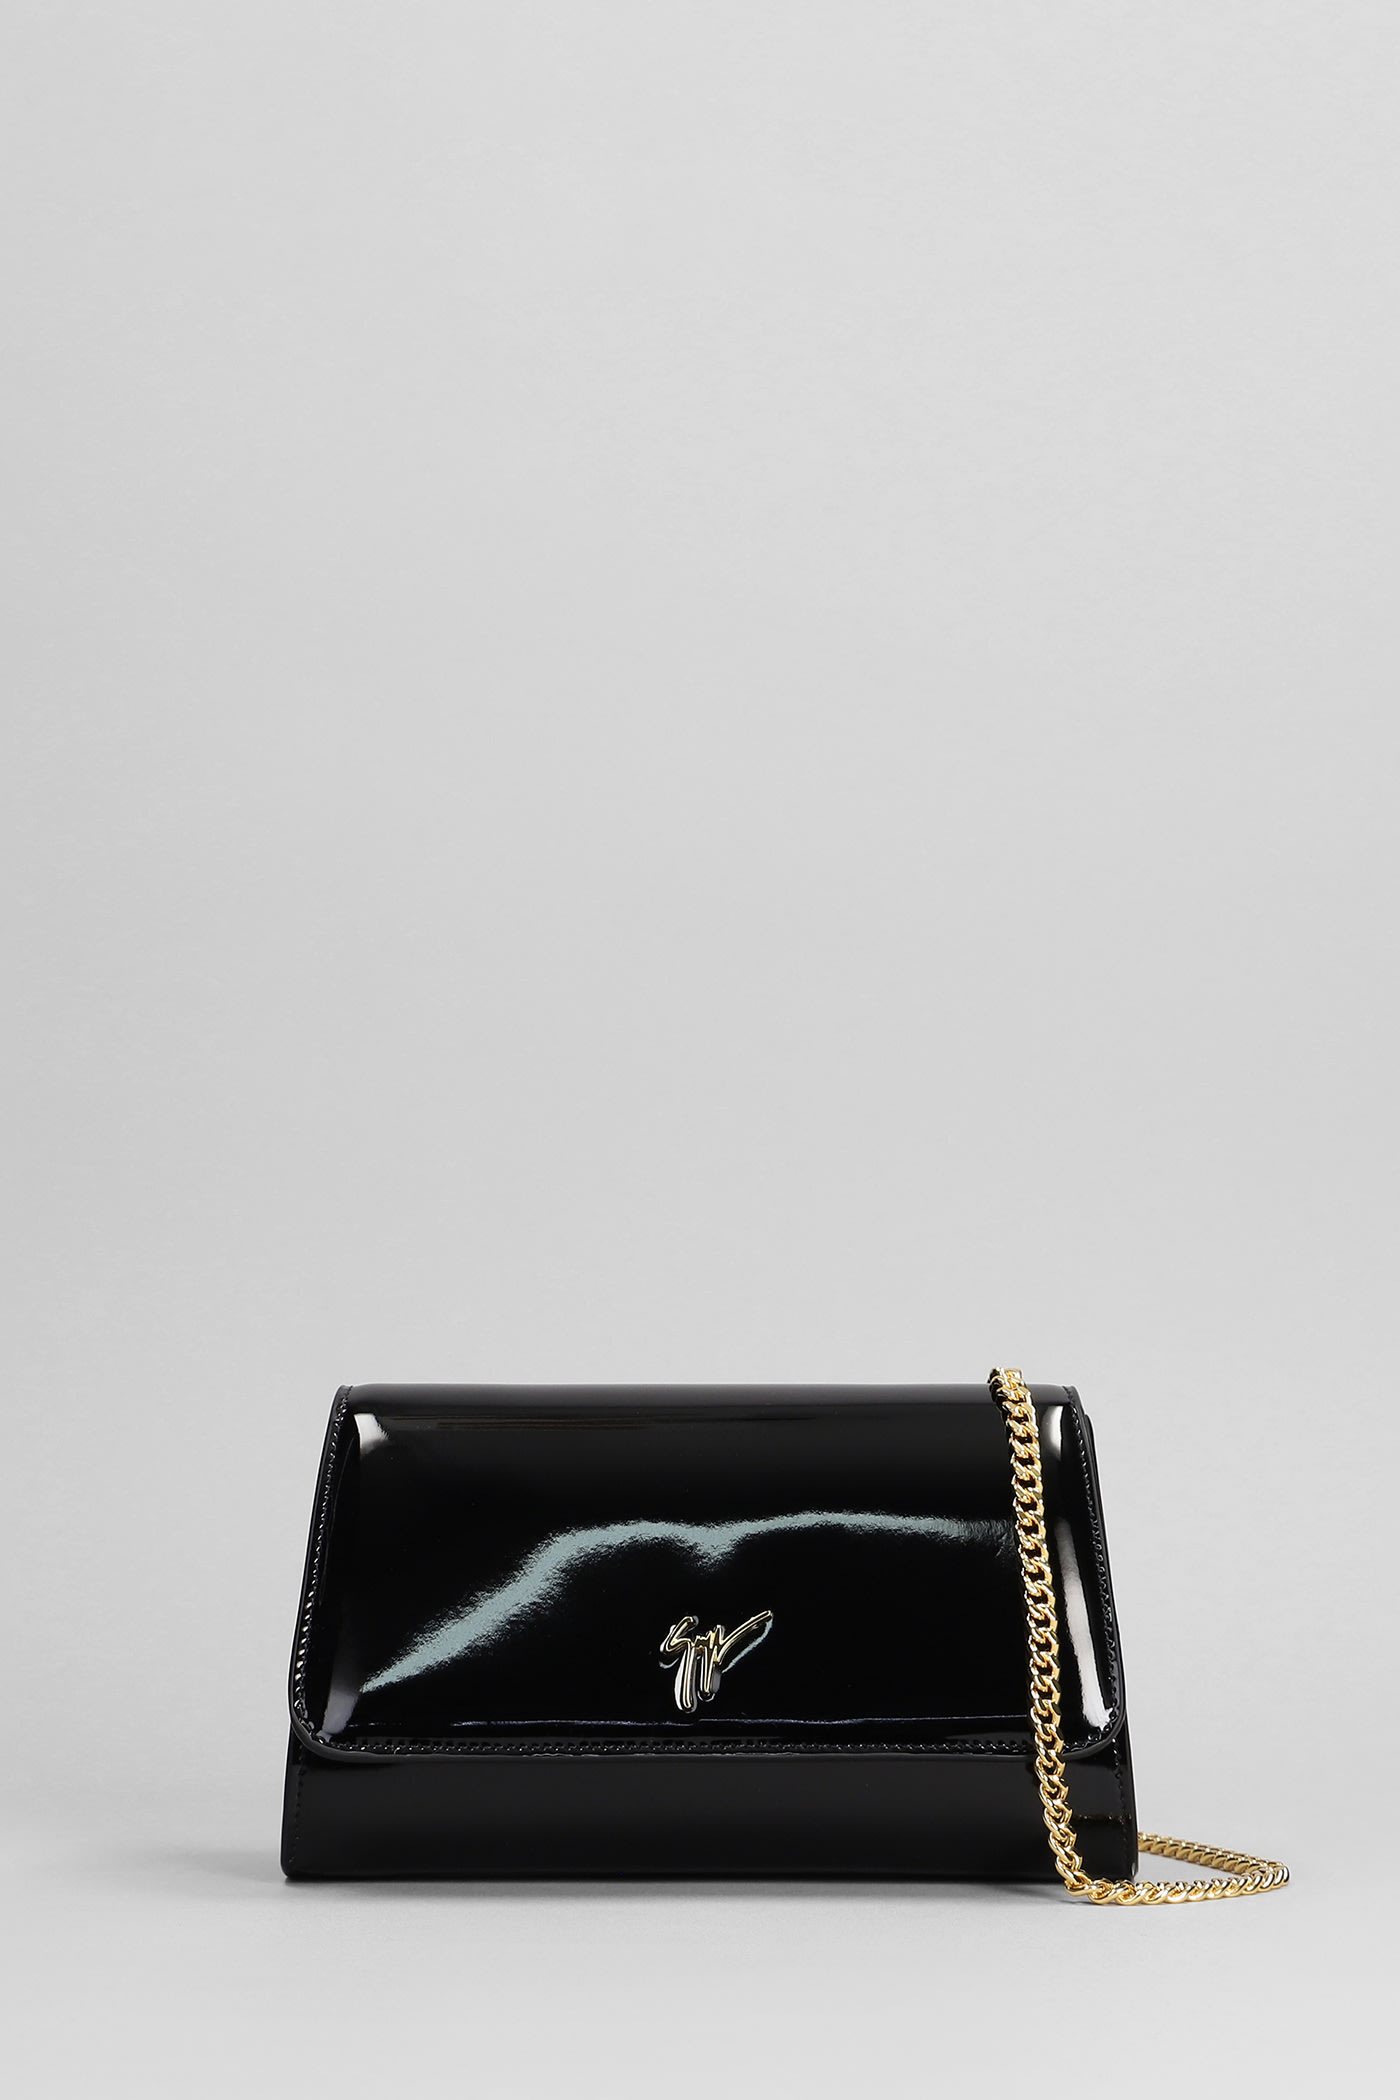 Giuseppe Zanotti Cleopatra Shoulder Bag In Black Leather